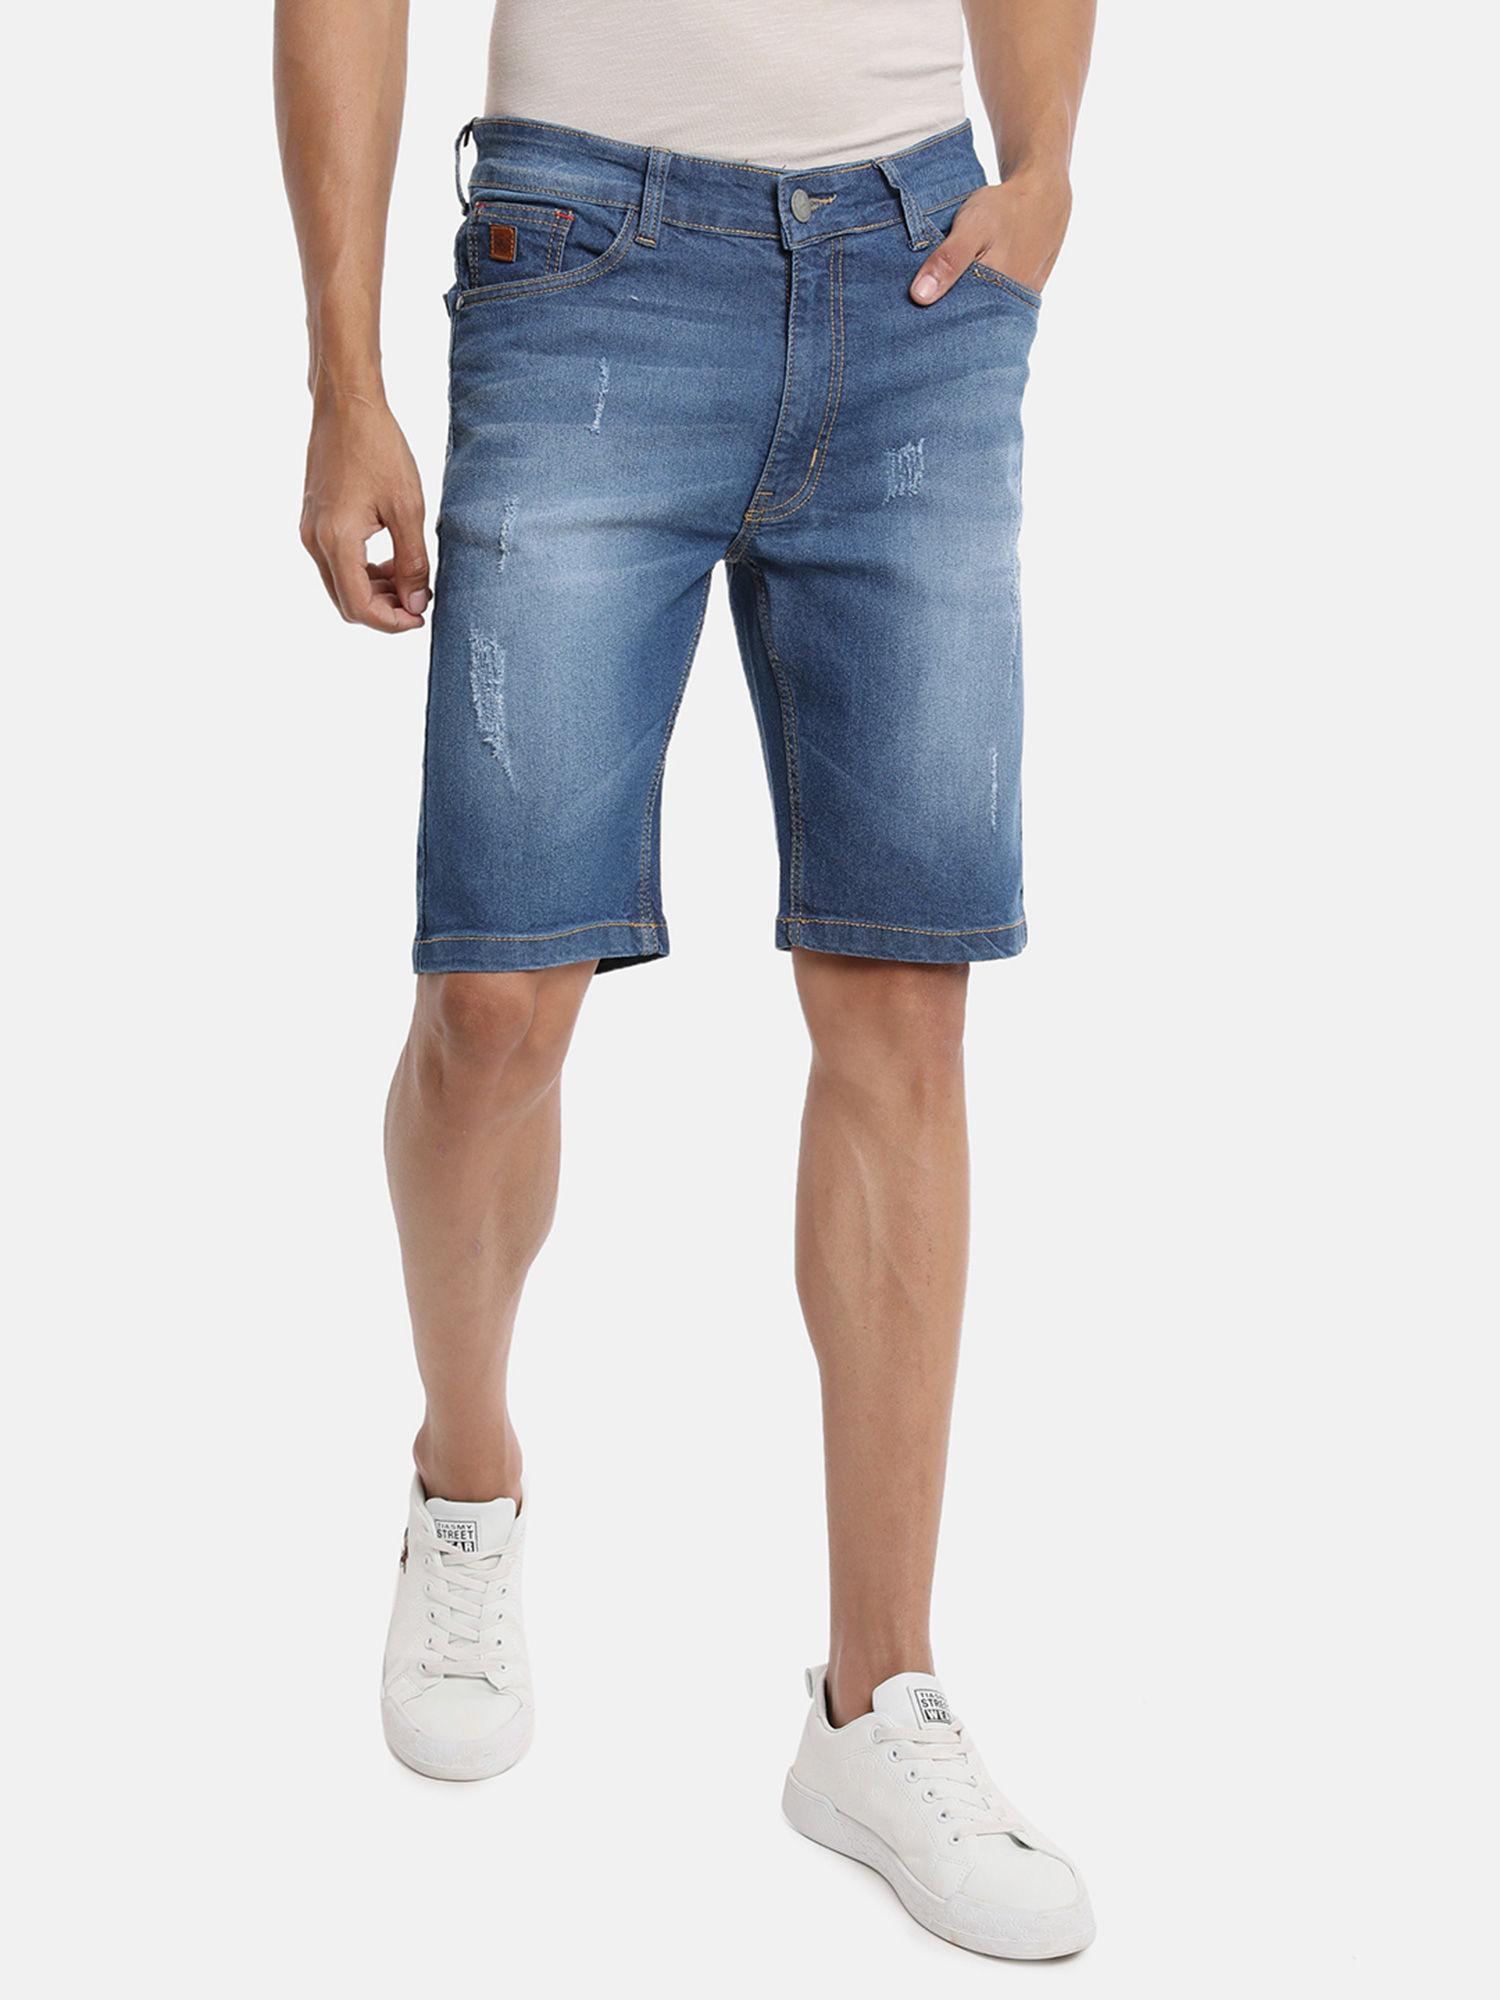 men-solid-stylish-denim-shorts